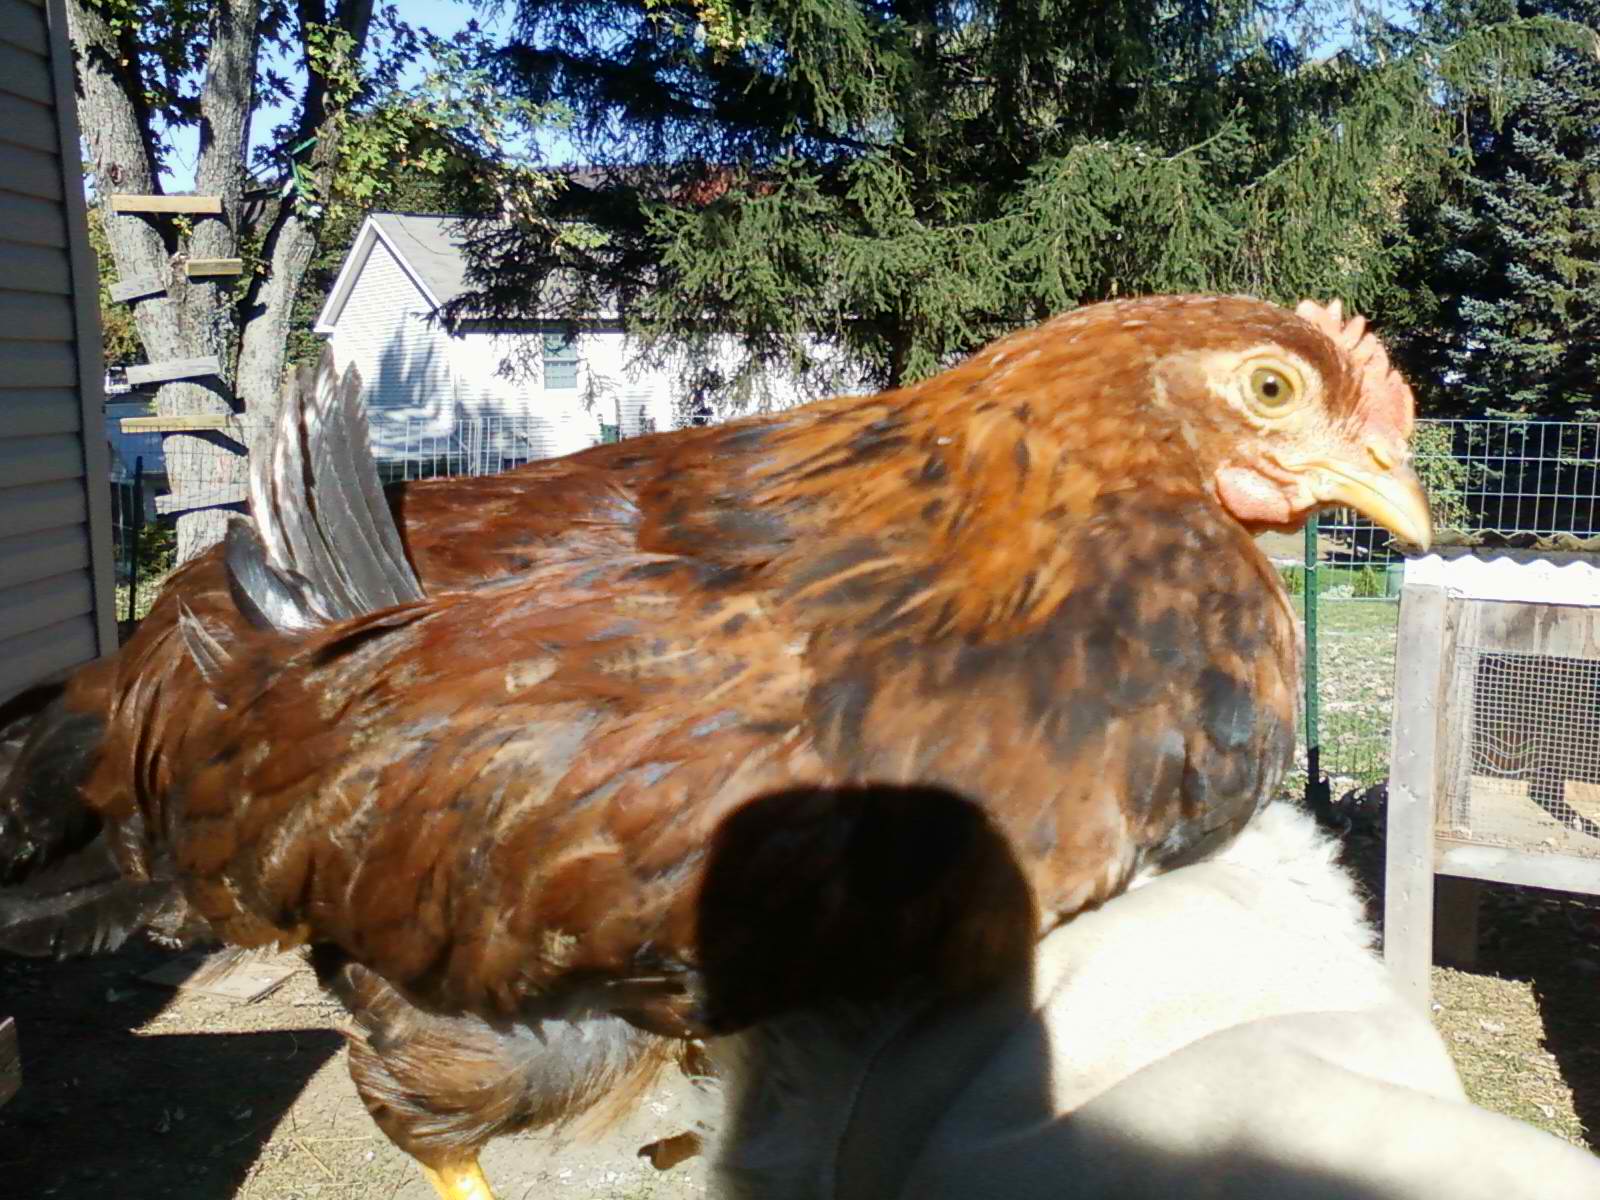 Chanticleer, a Welsumer cockerel, aged 3 1/2 months